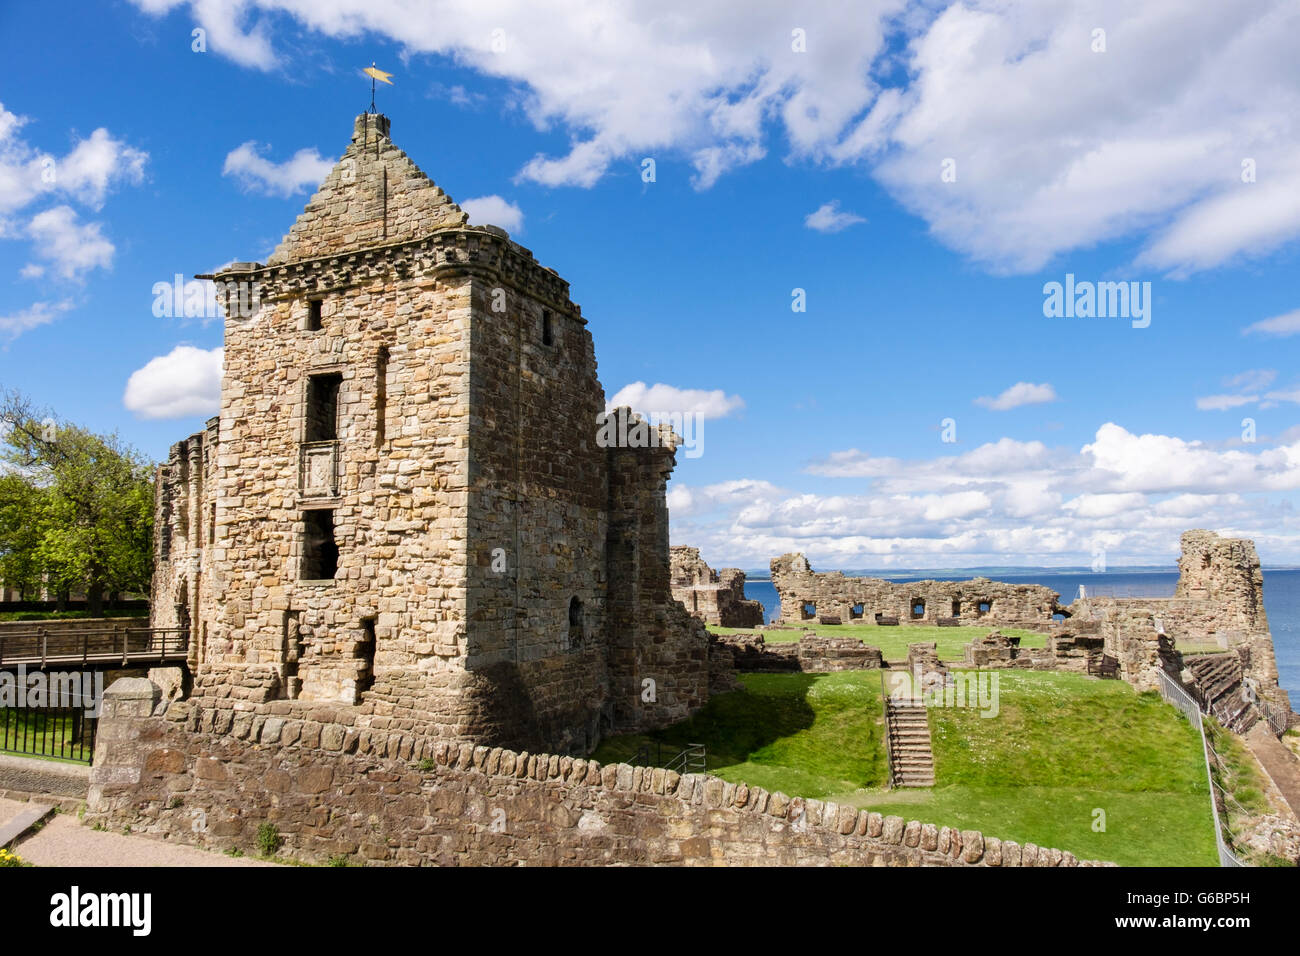 Las ruinas del castillo de St Andrews en motivos sobre la costa del Mar del Norte. Royal Burgh de St Andrews, Fife, Escocia, Reino Unido, Gran Bretaña Foto de stock